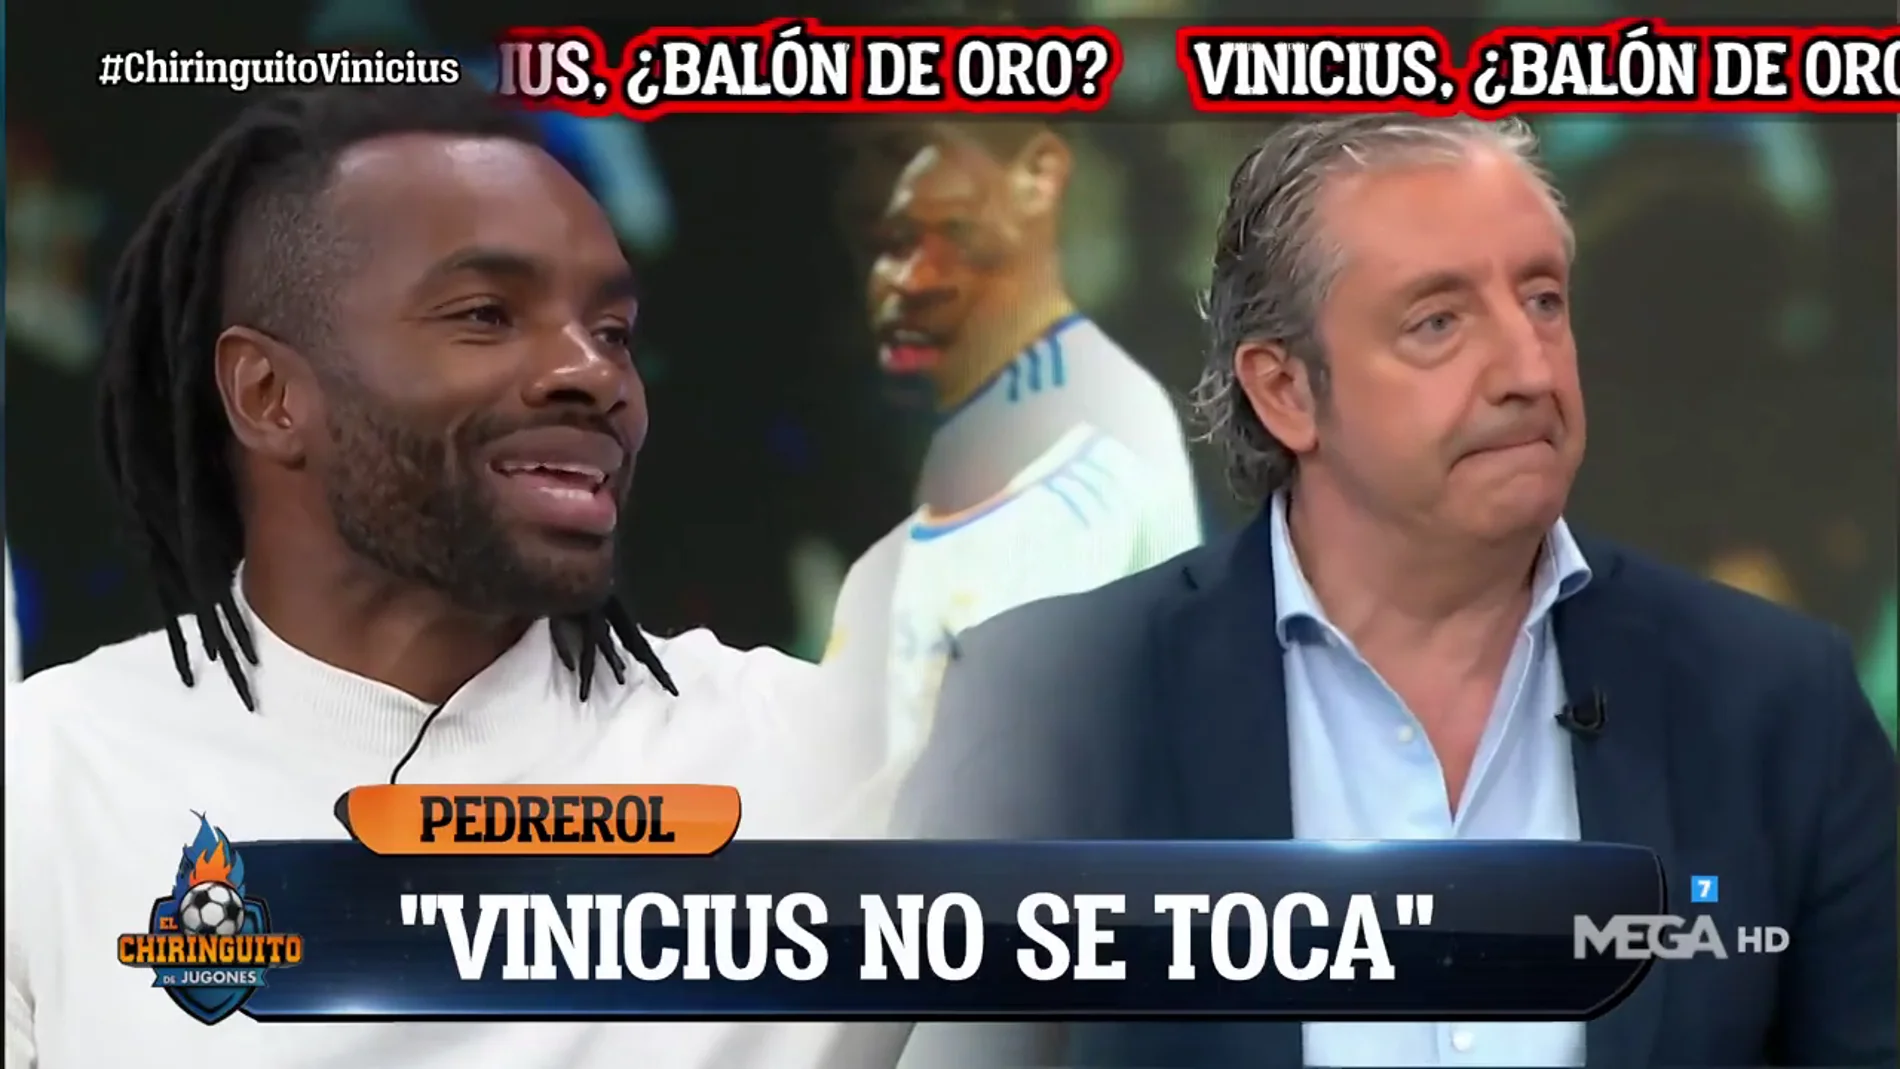 Josep Pedrerol: "Vinicius no se toca"